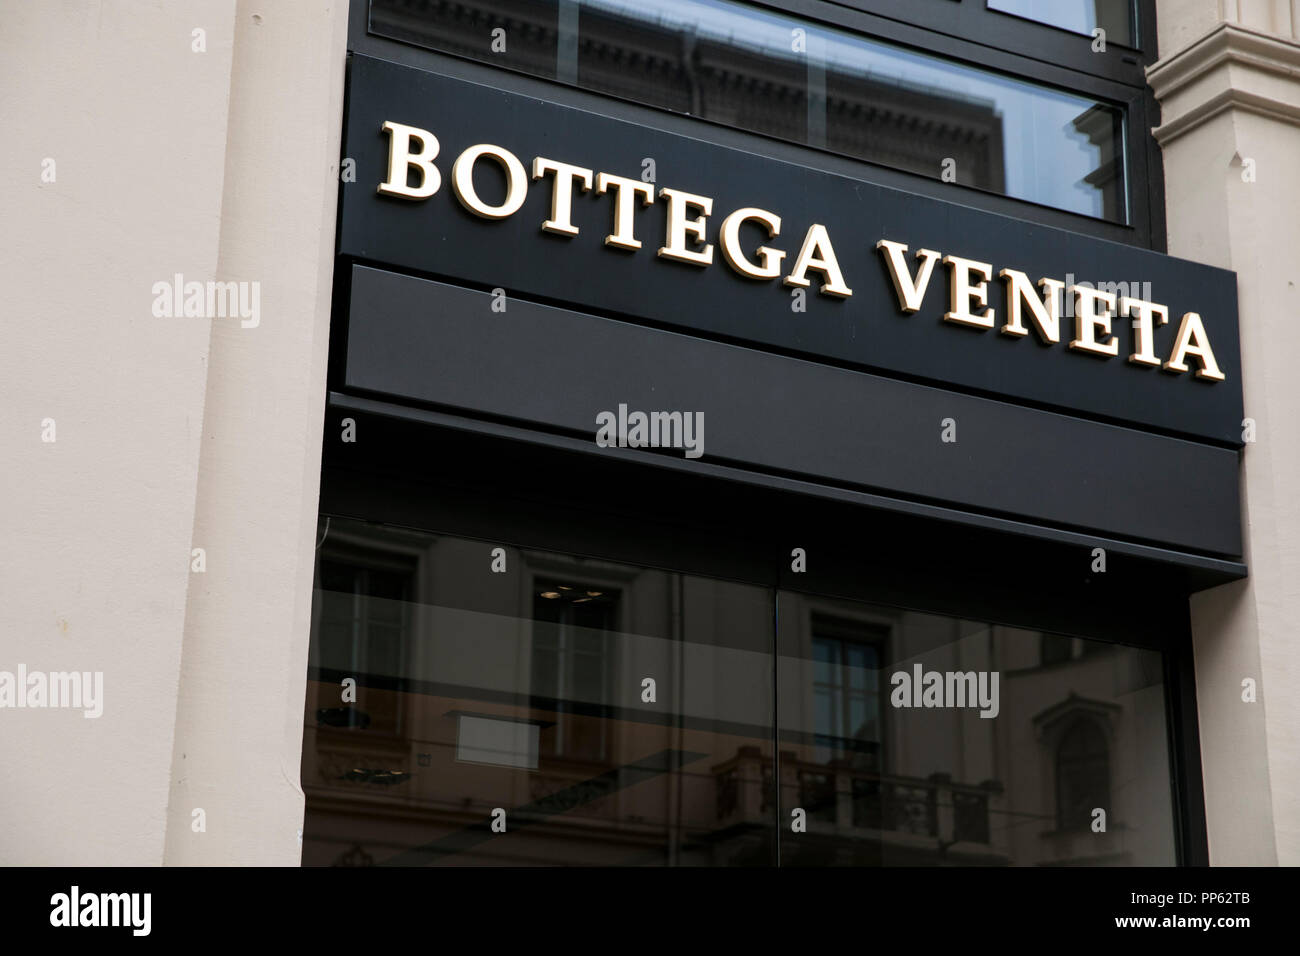 Un logo segno esterno di una Bottega Veneta retail store a Monaco di Baviera, Germania, il 2 settembre 2018. Foto Stock